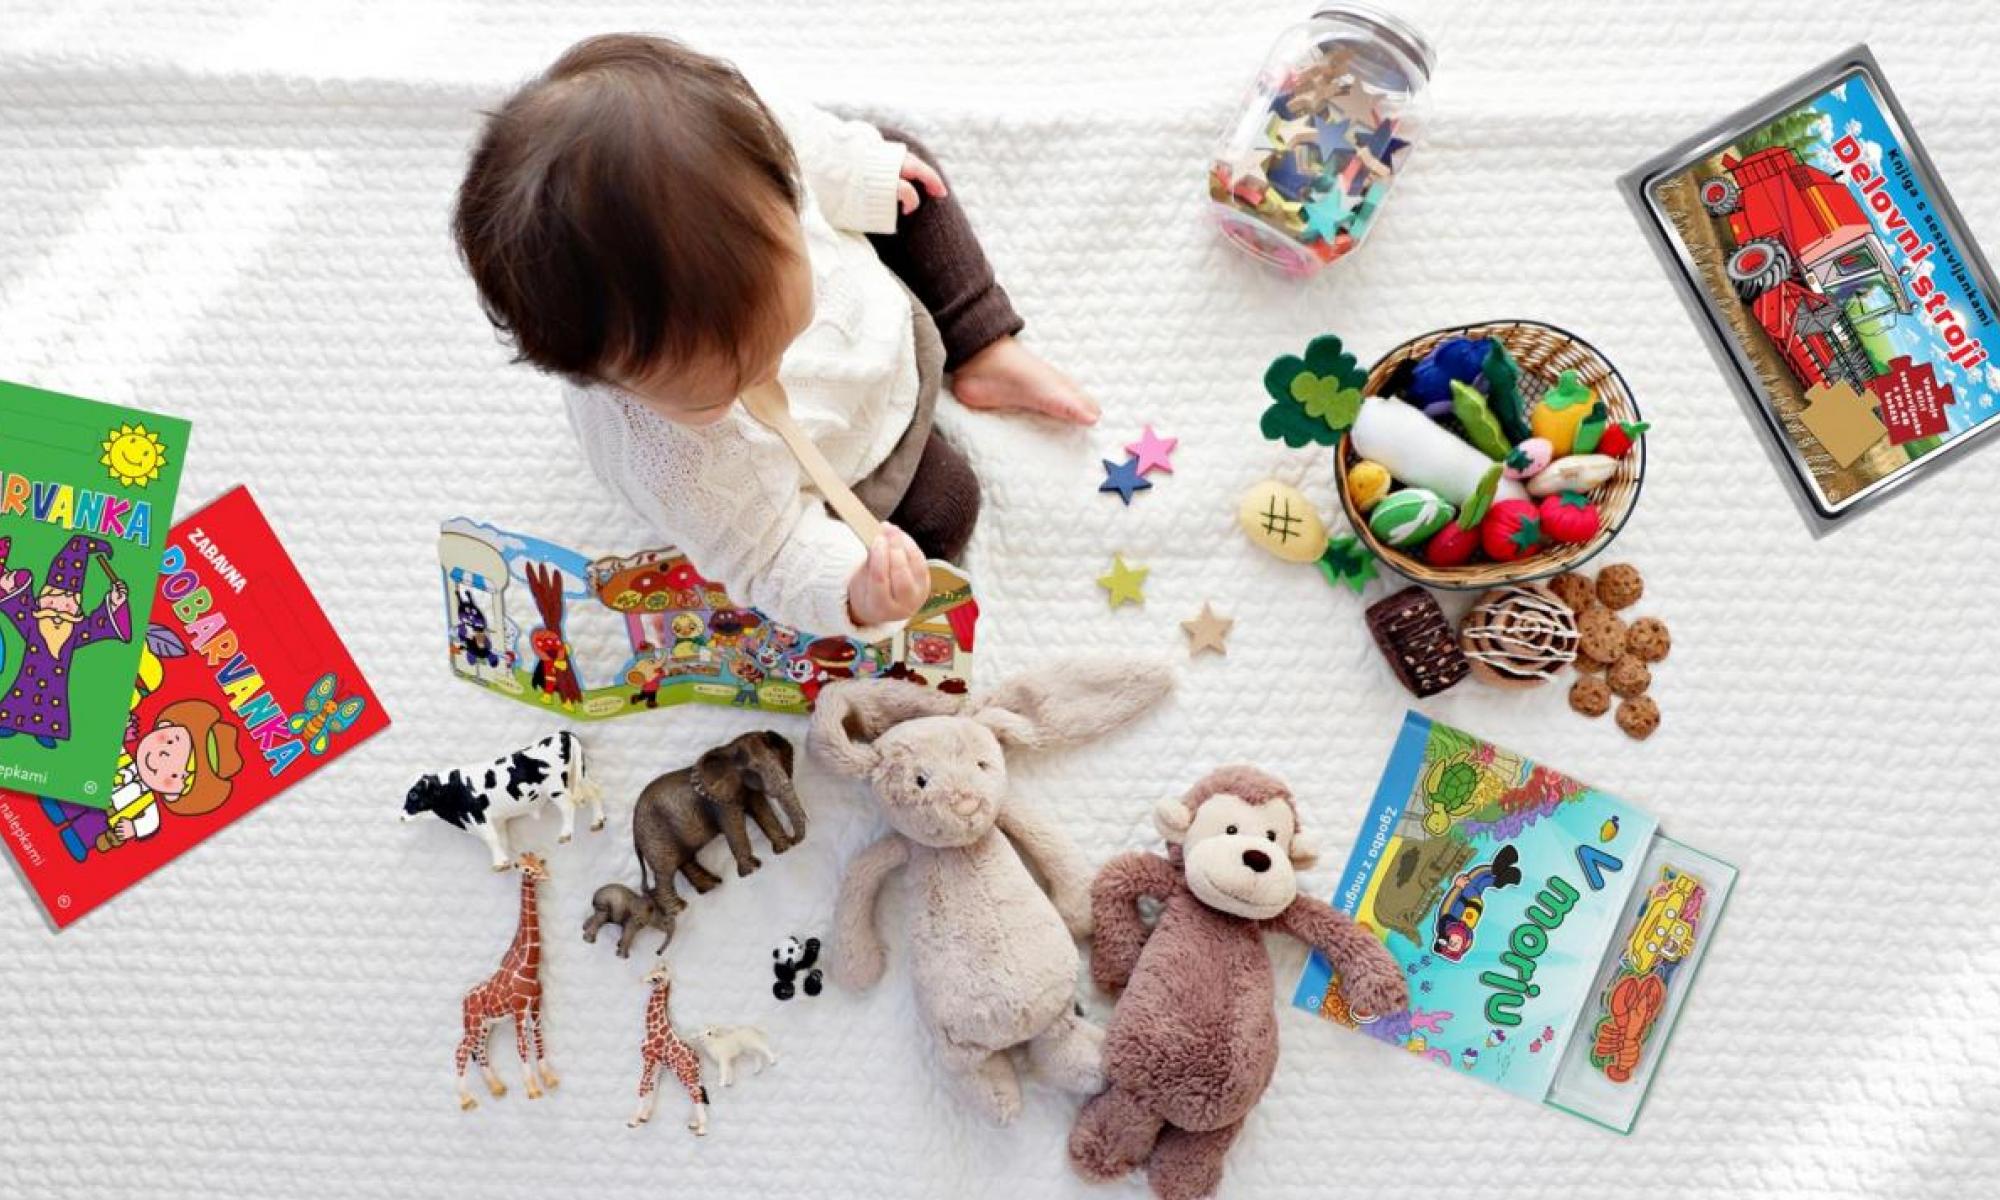 Izbor knjig, ki malčke spodbujajo k raziskovanju